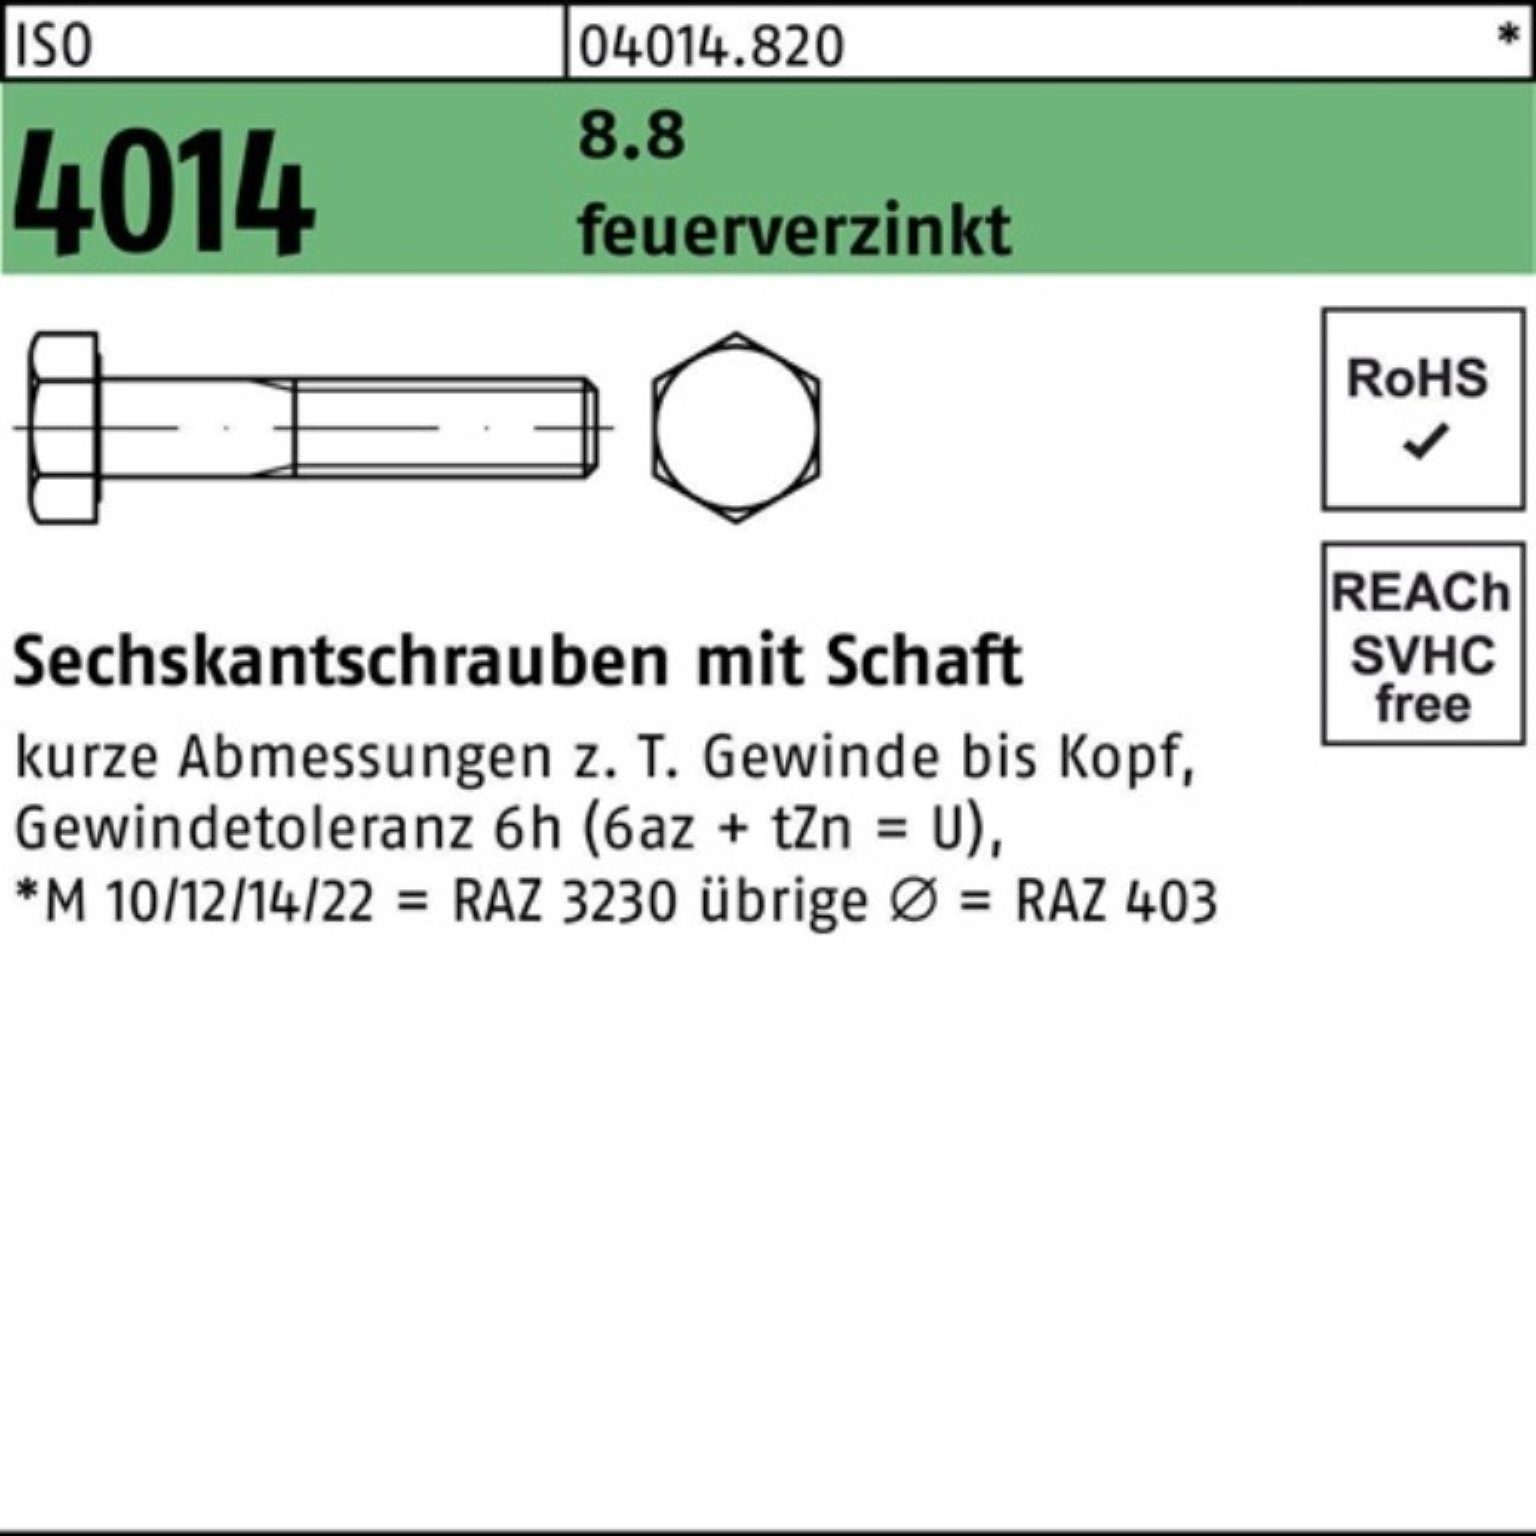 Bufab Sechskantschraube 100er Pack Sechskantschraube ISO 4014 Schaft M12x 50 8.8 feuerverz. 10